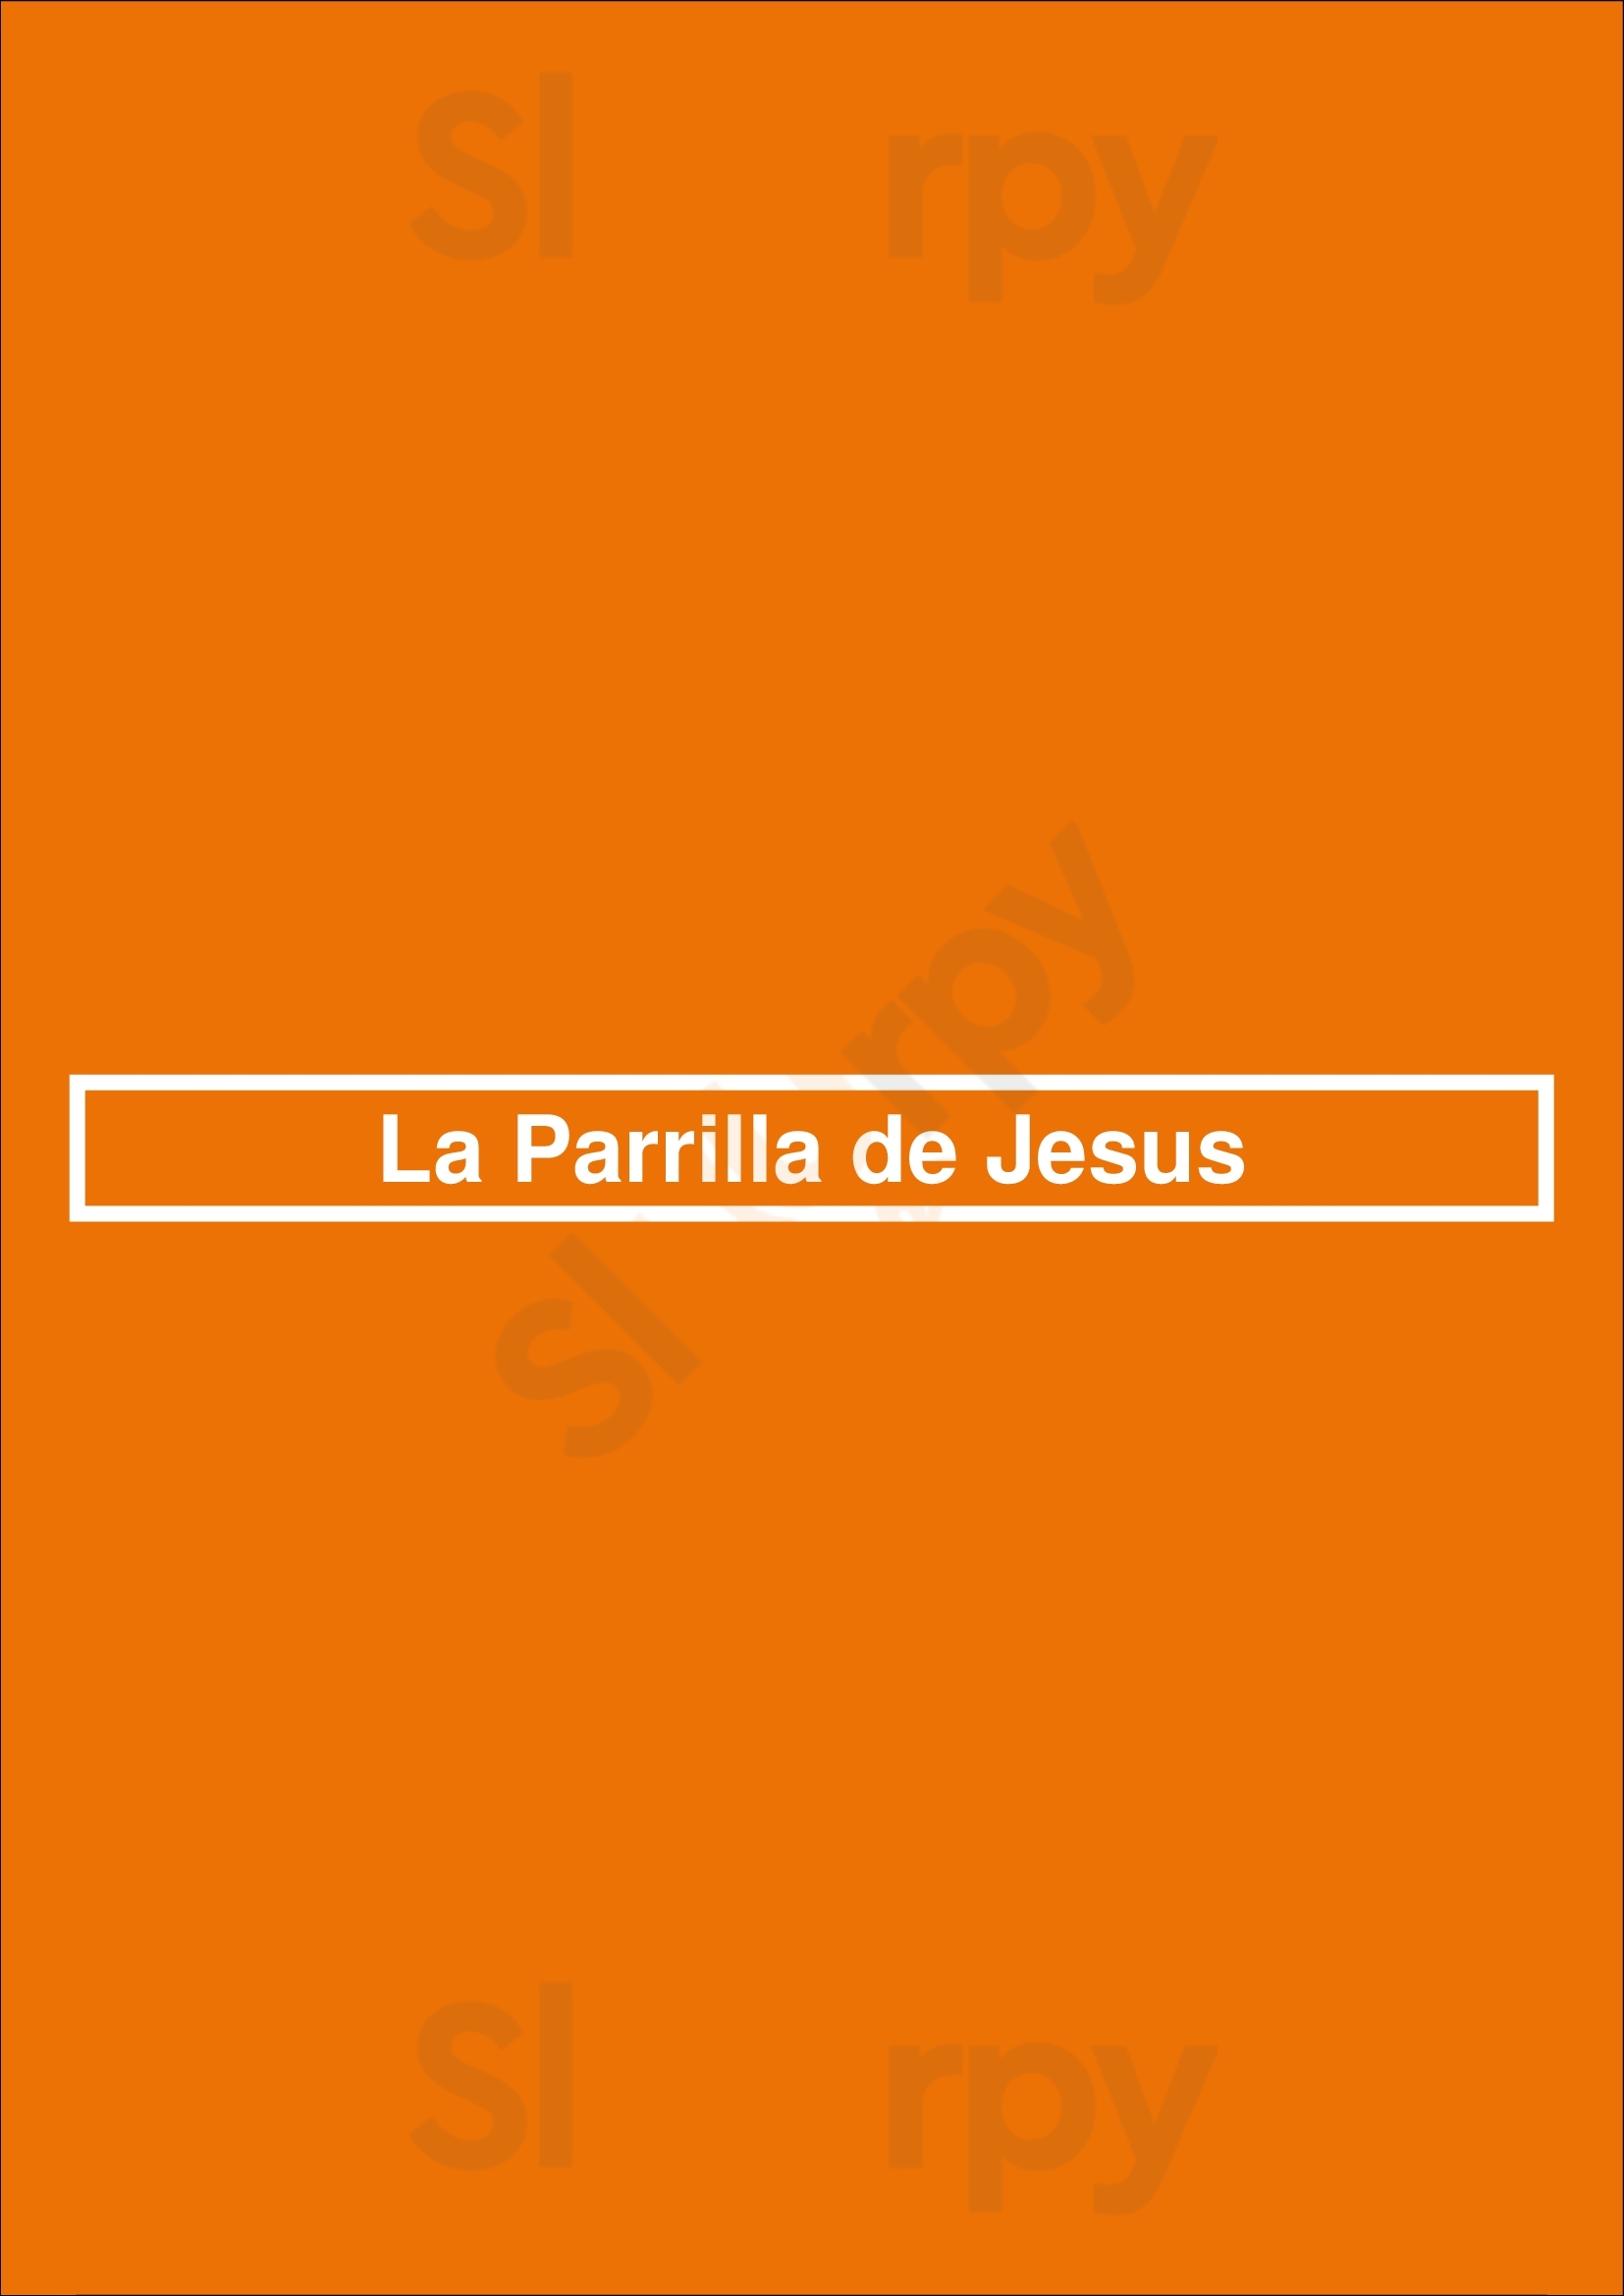 La Parrilla De Jesus Buenos Aires Menu - 1